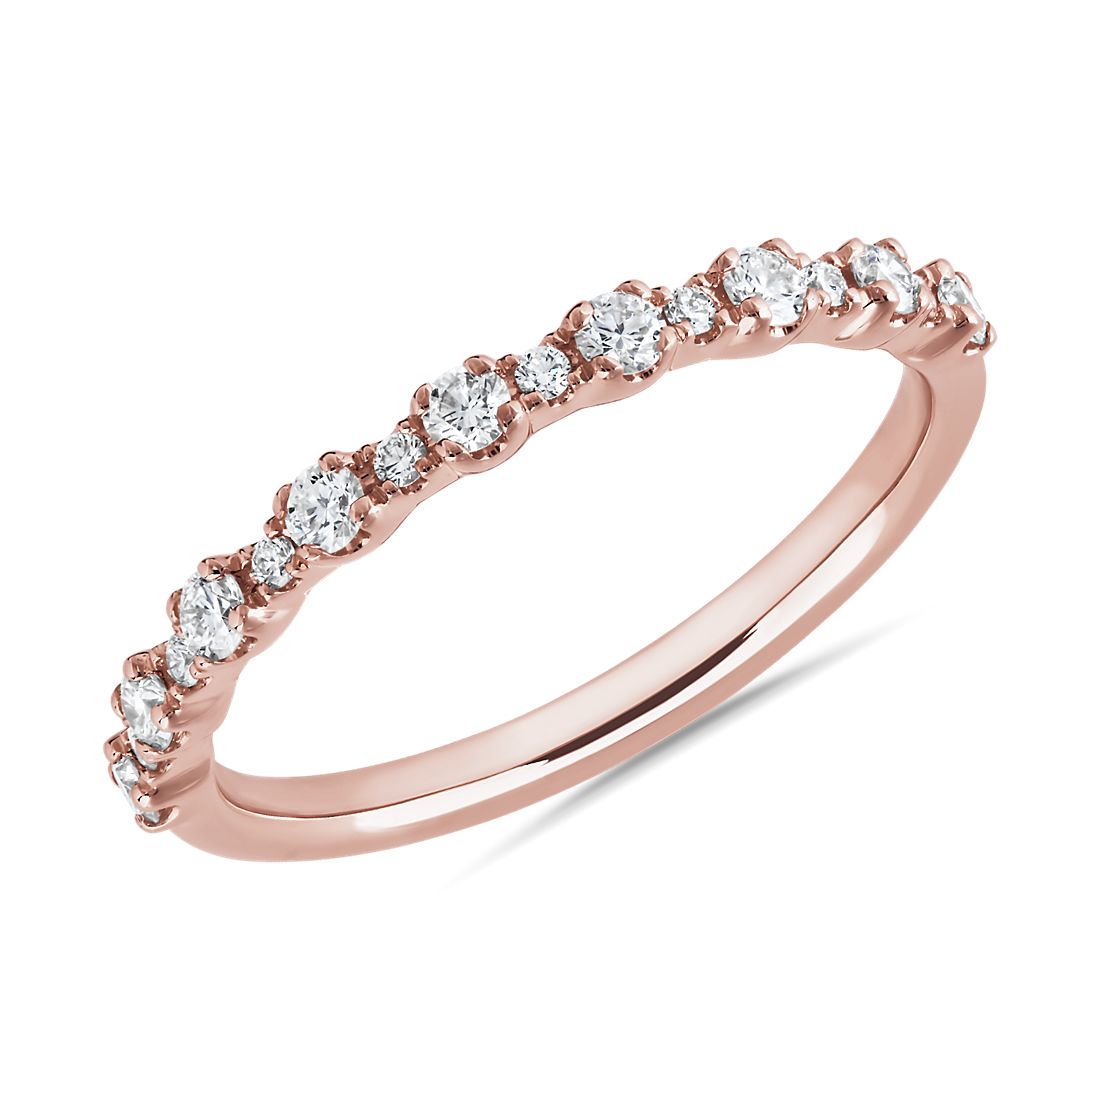 Capri Diamond Ring in 14k Rose Gold (1/4 ct. tw.)